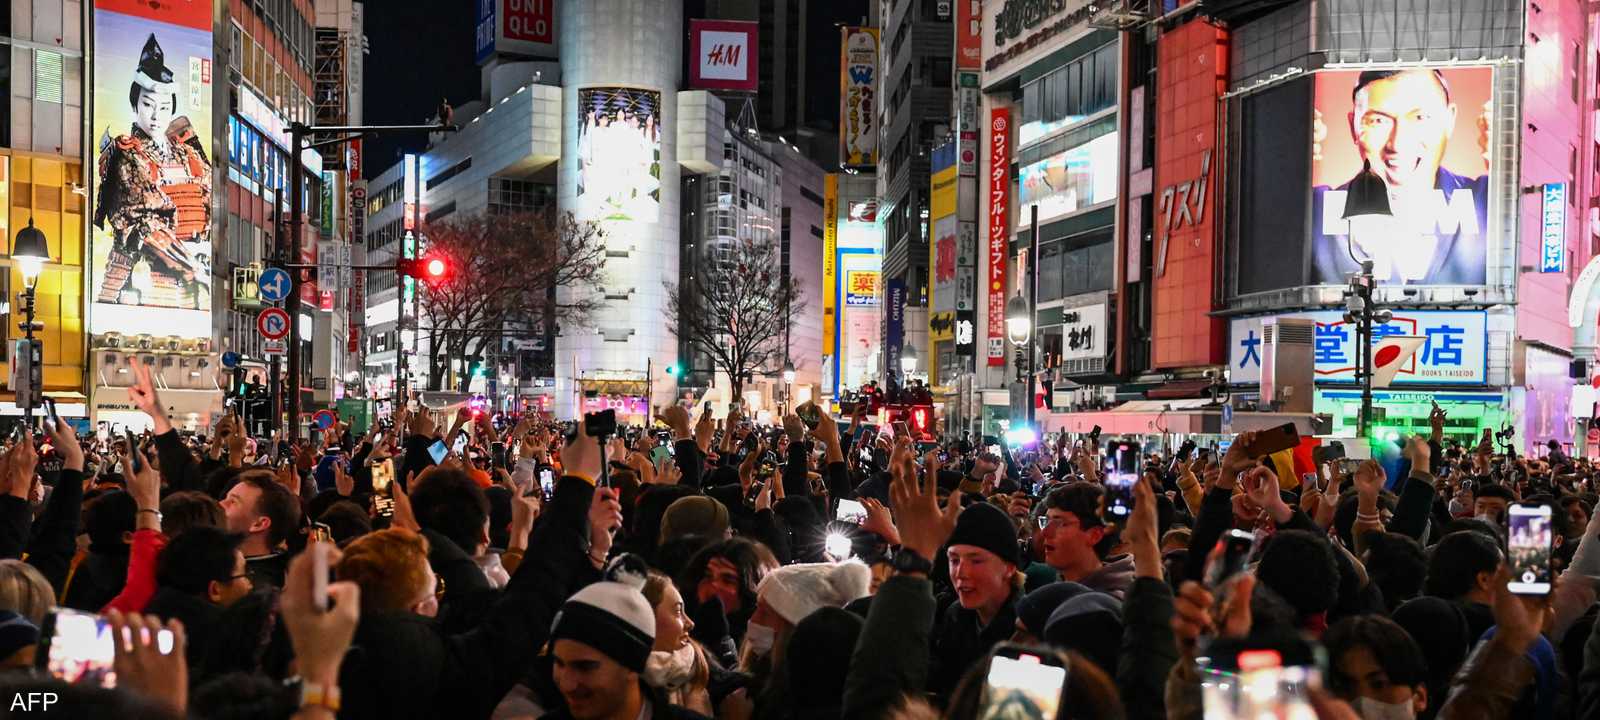 يبلغ عدد سكان طوكيو حوالي 35 مليون نسمة